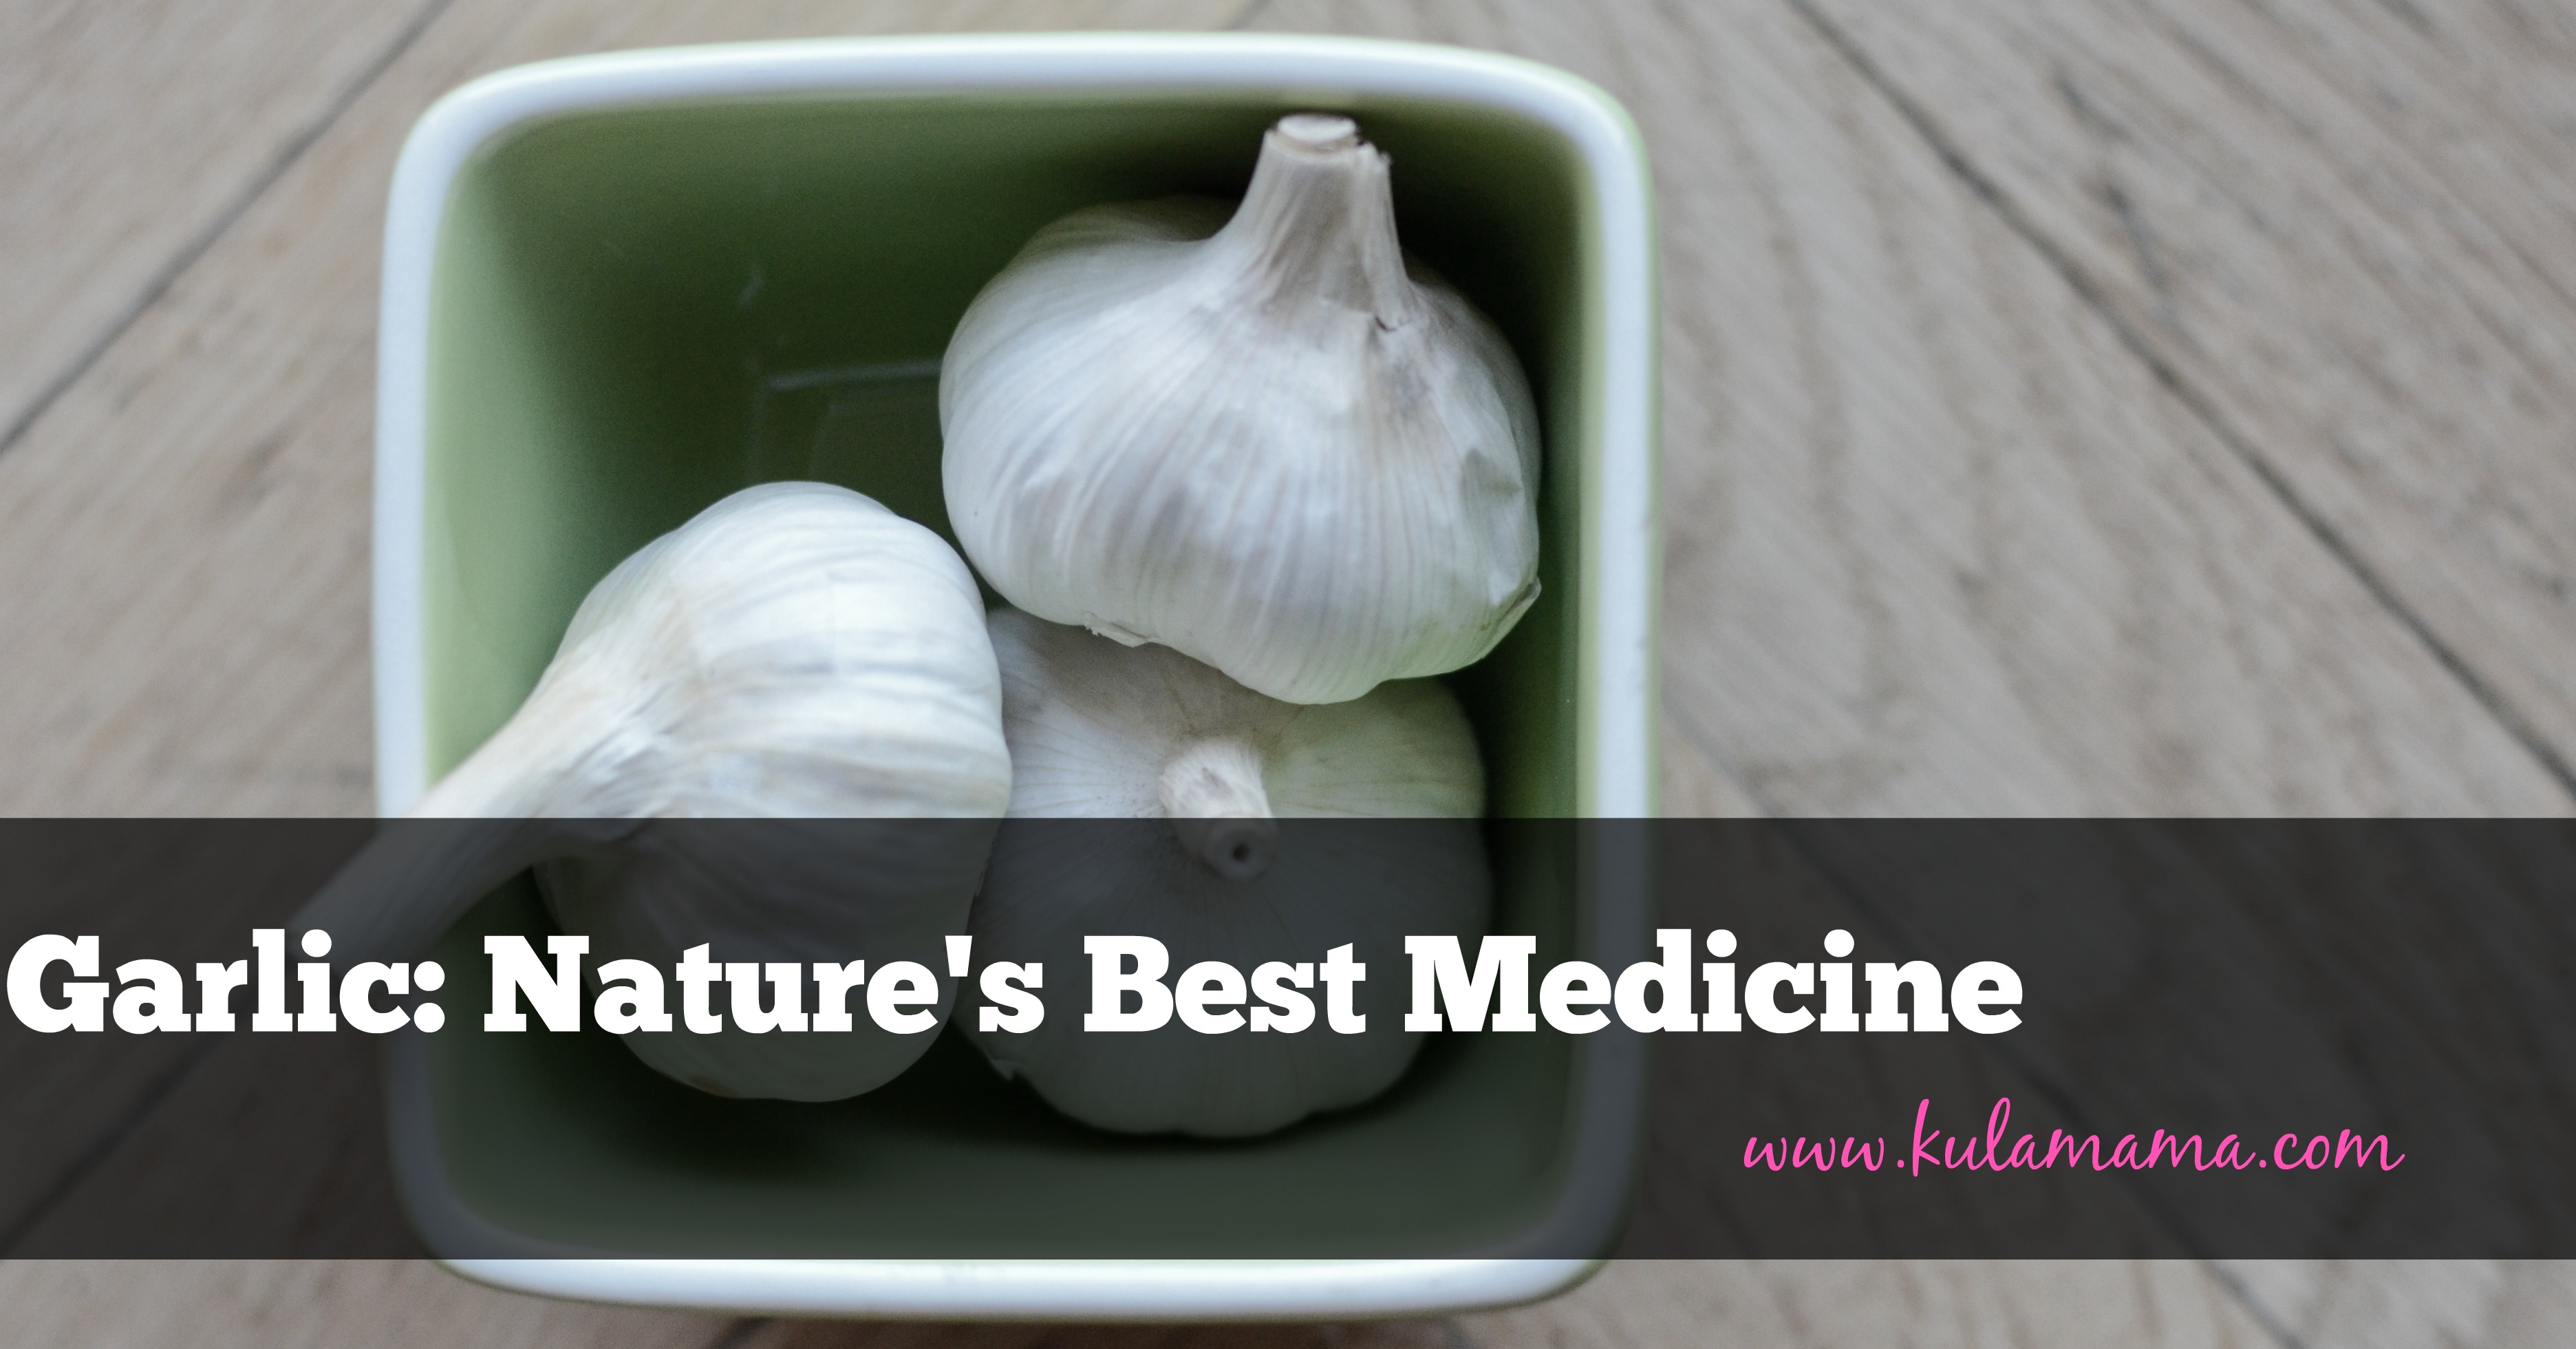 Garlic: Nature’s Best Medicine